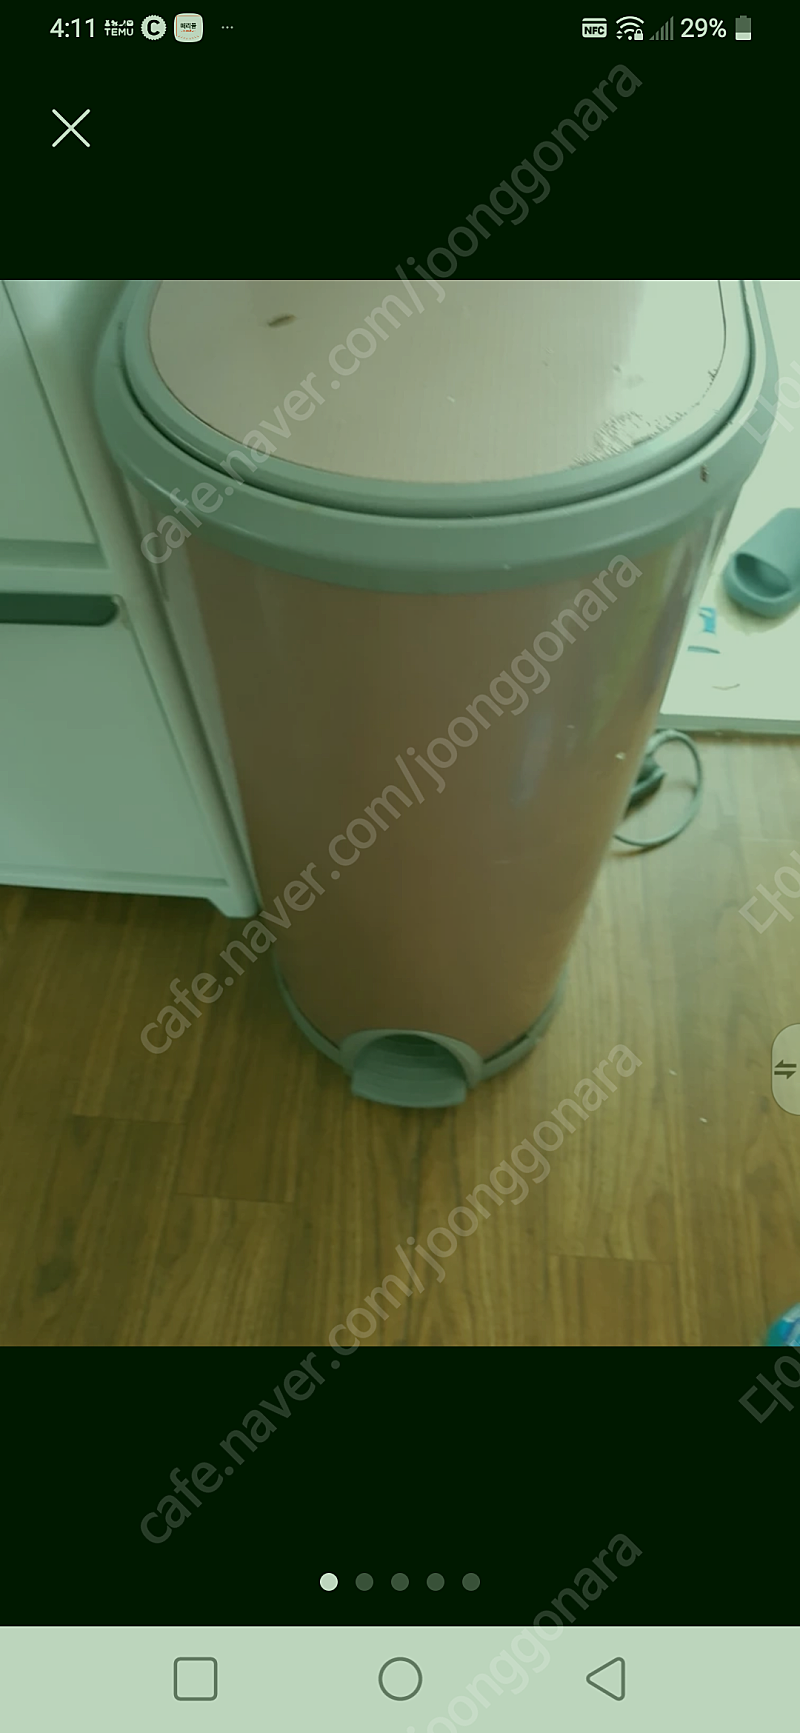 냉장냉동 음식물 처리기 쓰레기 보관 쓰레기통